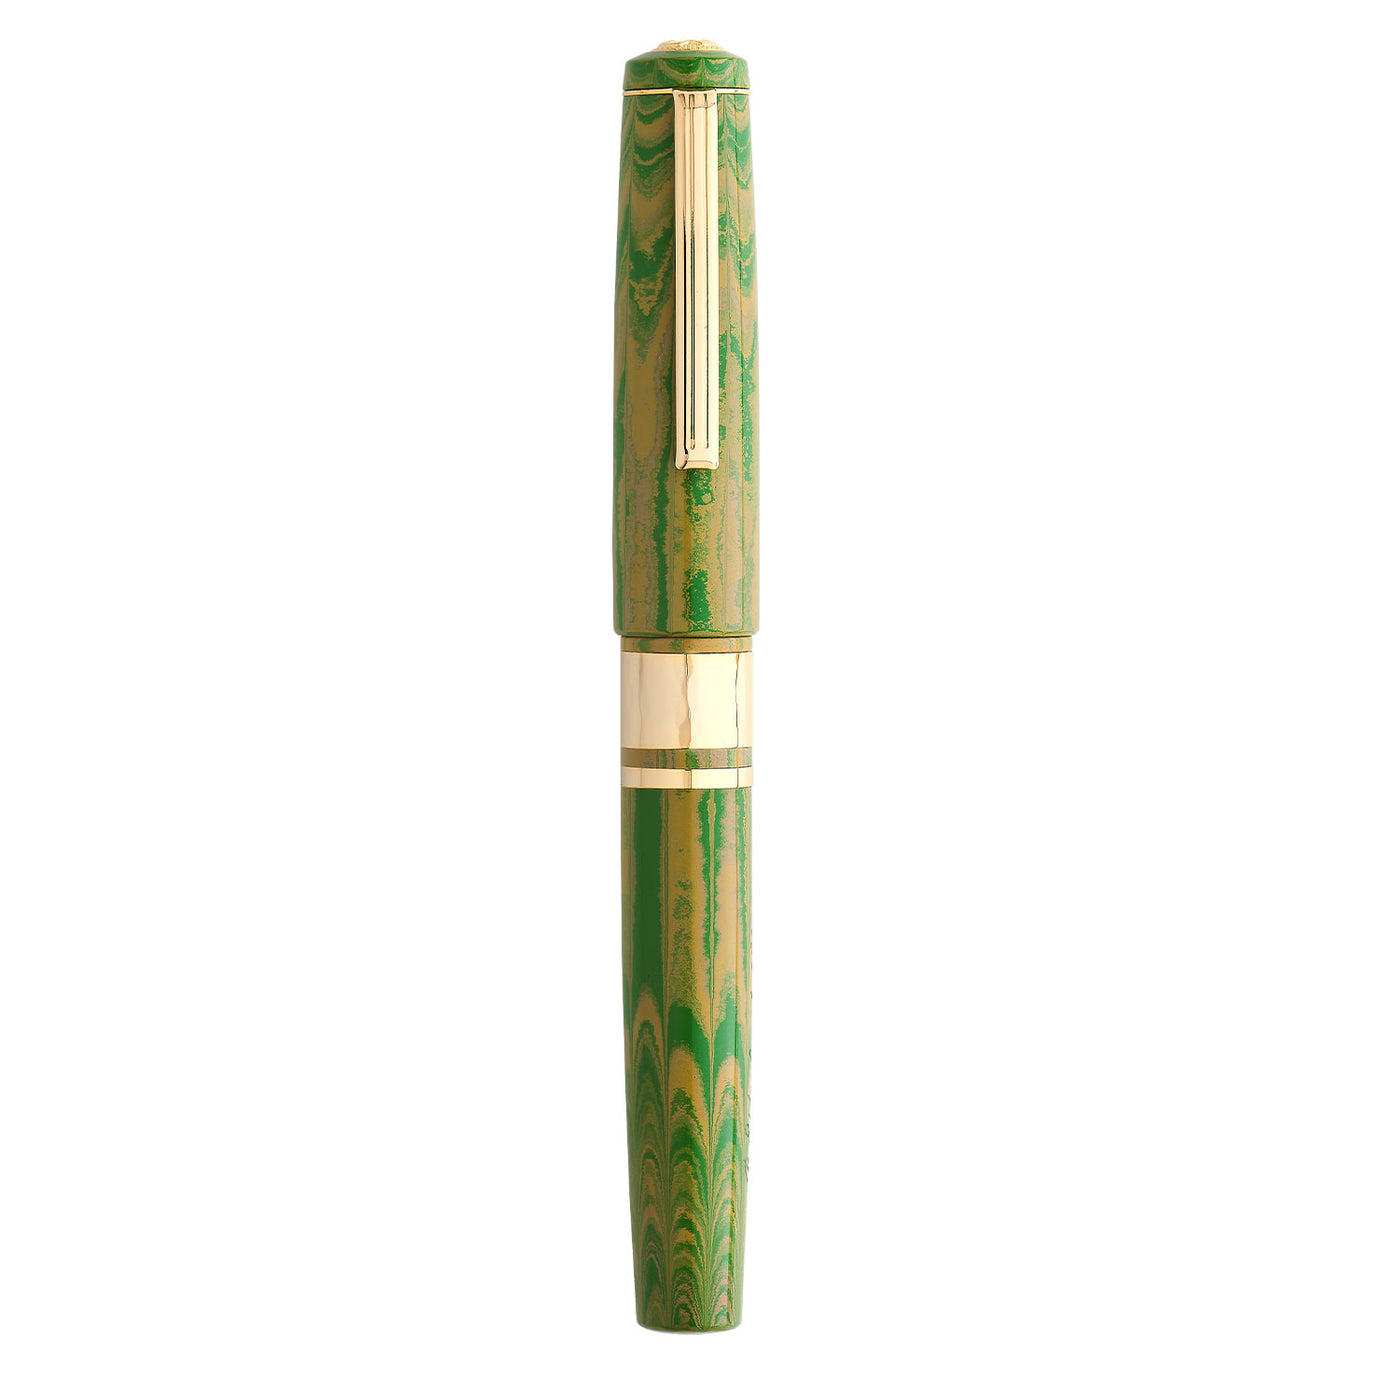 Esterbrook Big-J Fountain Pen - Lotus Green GT 9